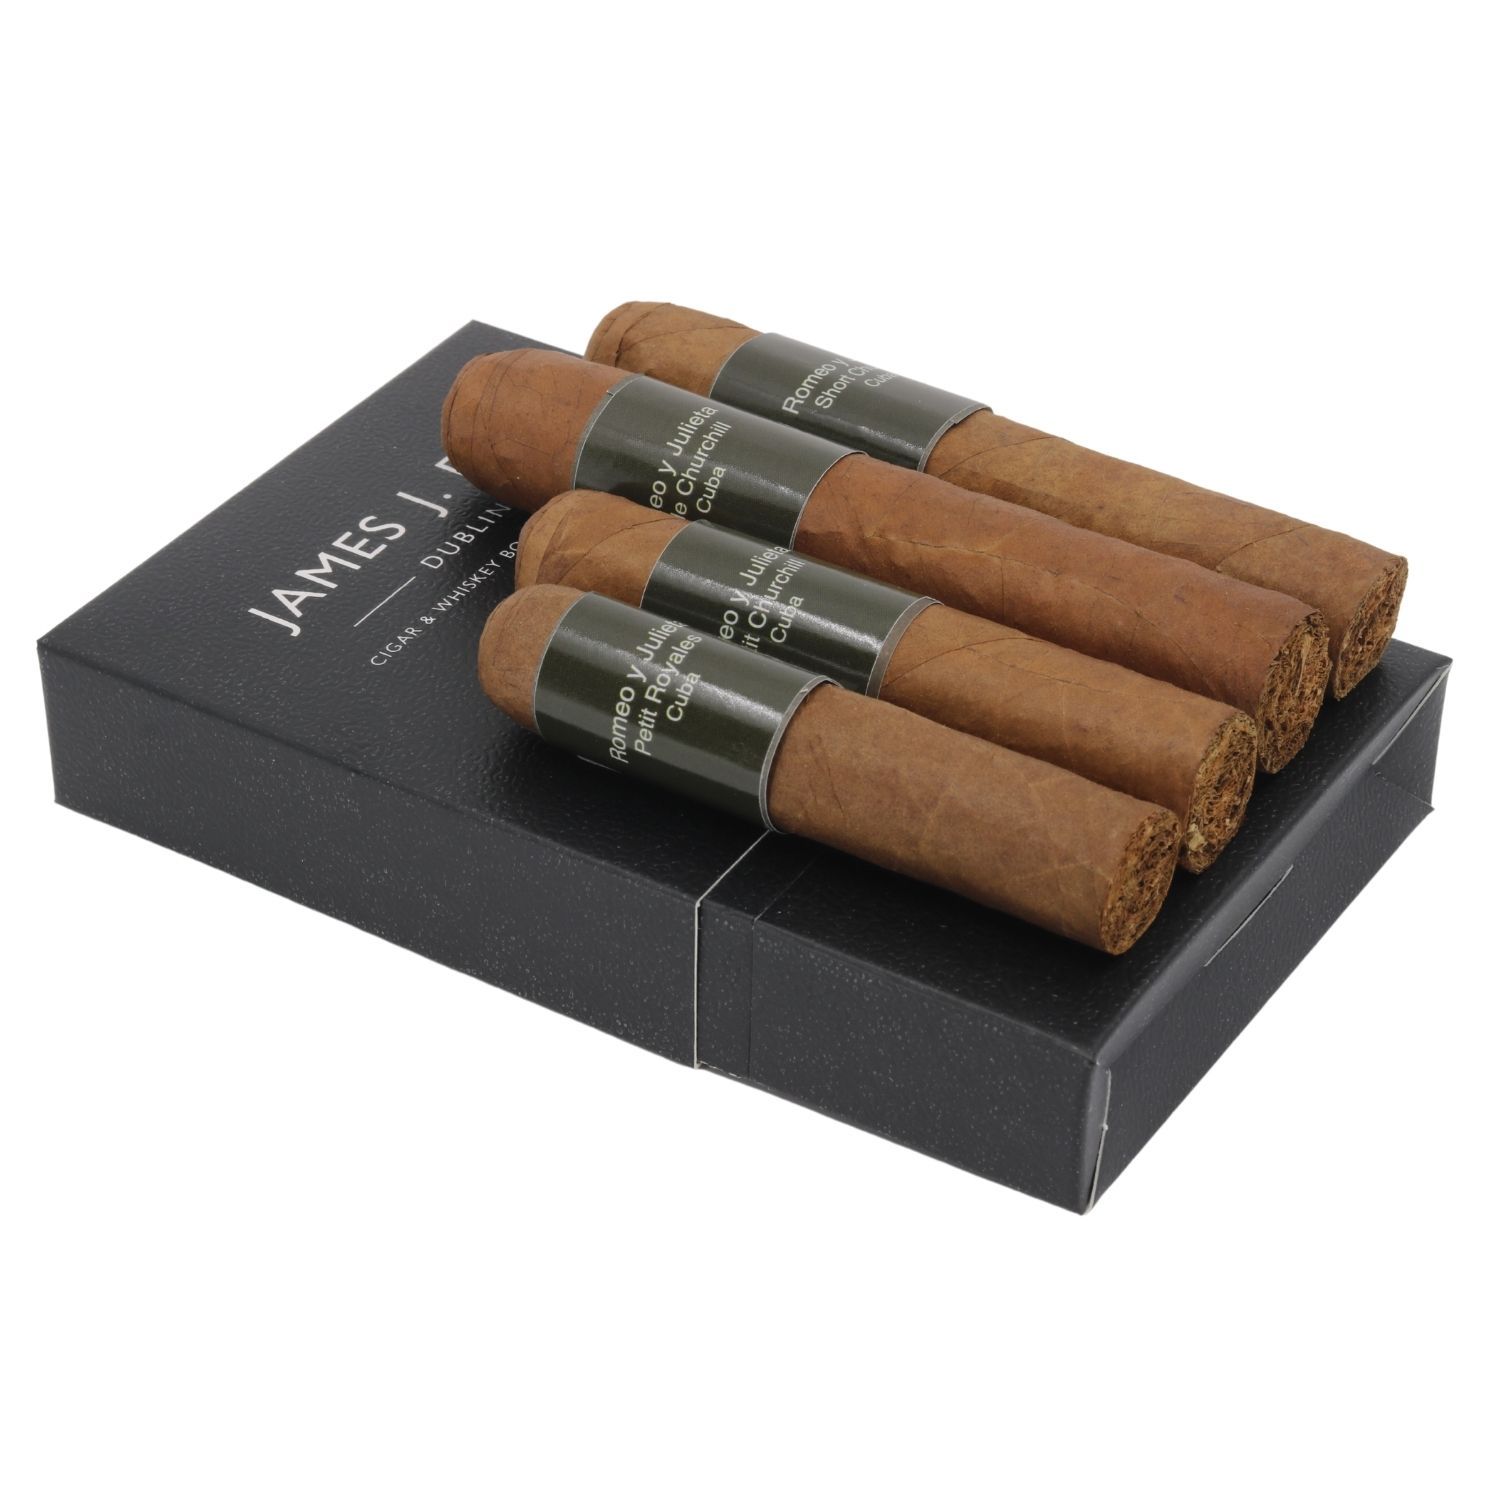 Vì sao Acigar trở thành địa chỉ thu mua xì gà Cigar lớn hàng đầu hiện nay?